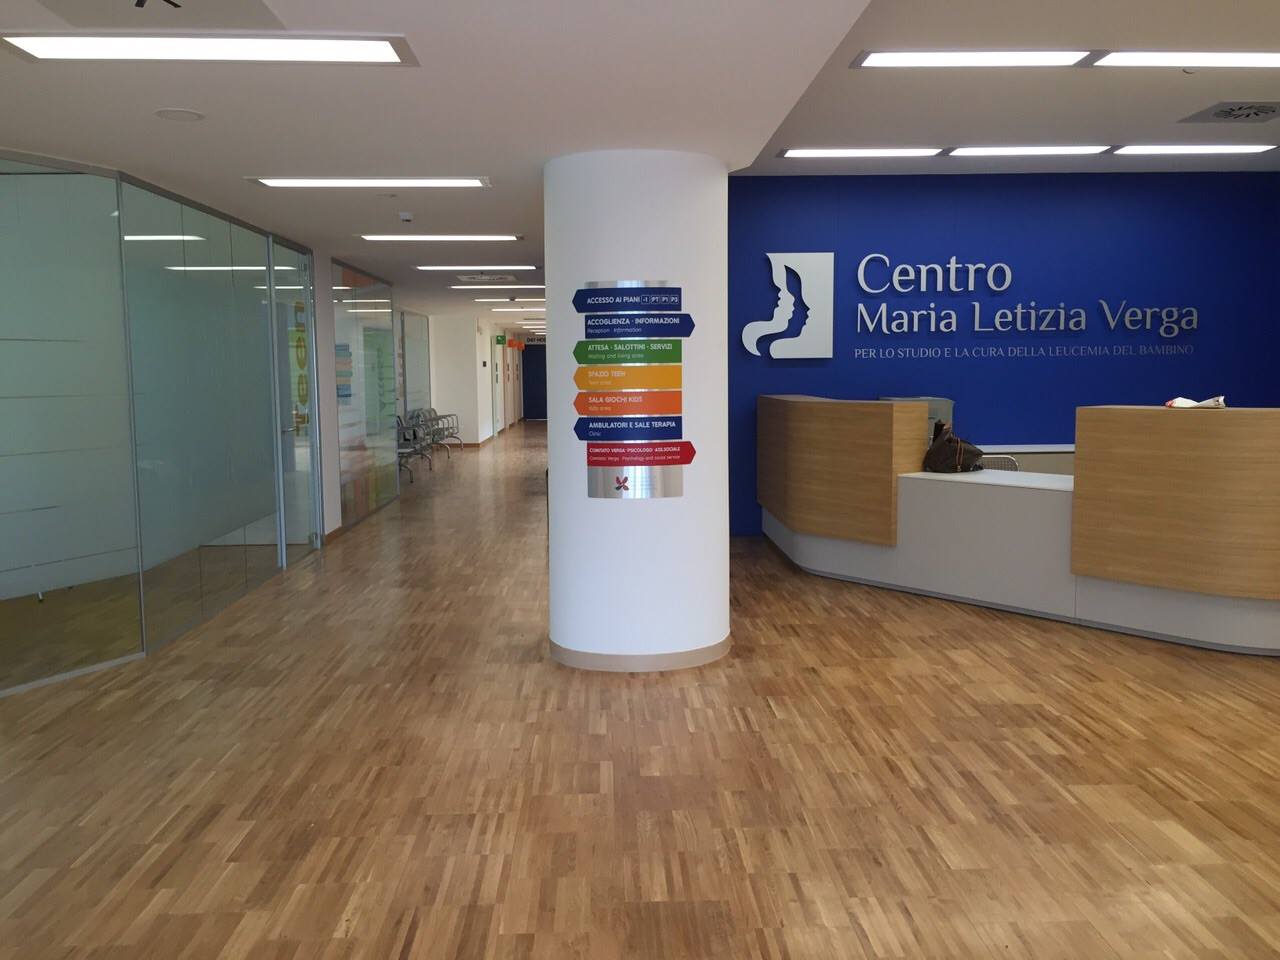 Centro Maria Letizia Verga-Comitato Maria Letizia Verga